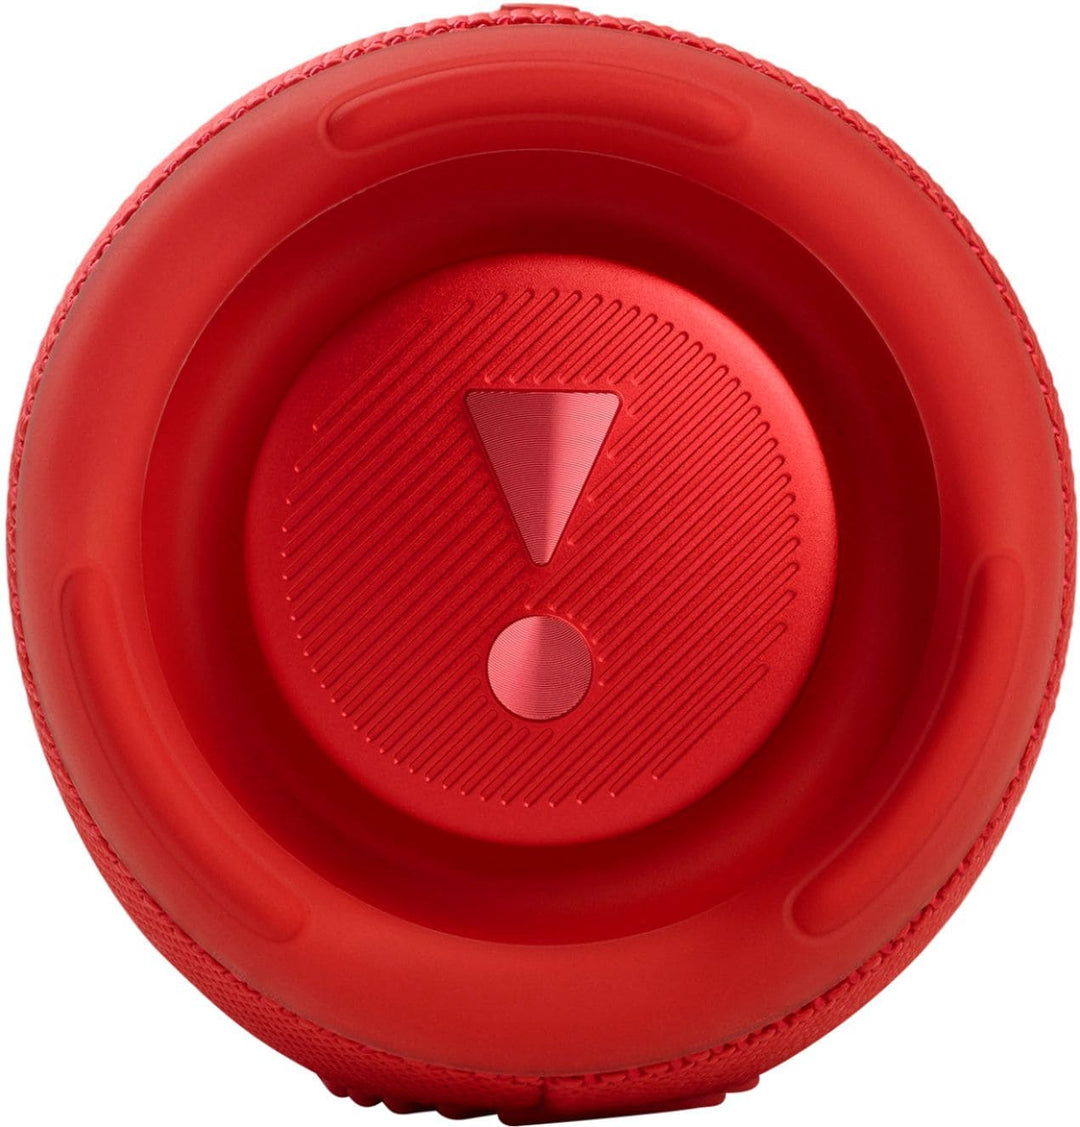 JBL - CHARGE5 Portable Waterproof Speaker with Powerbank - Red_2